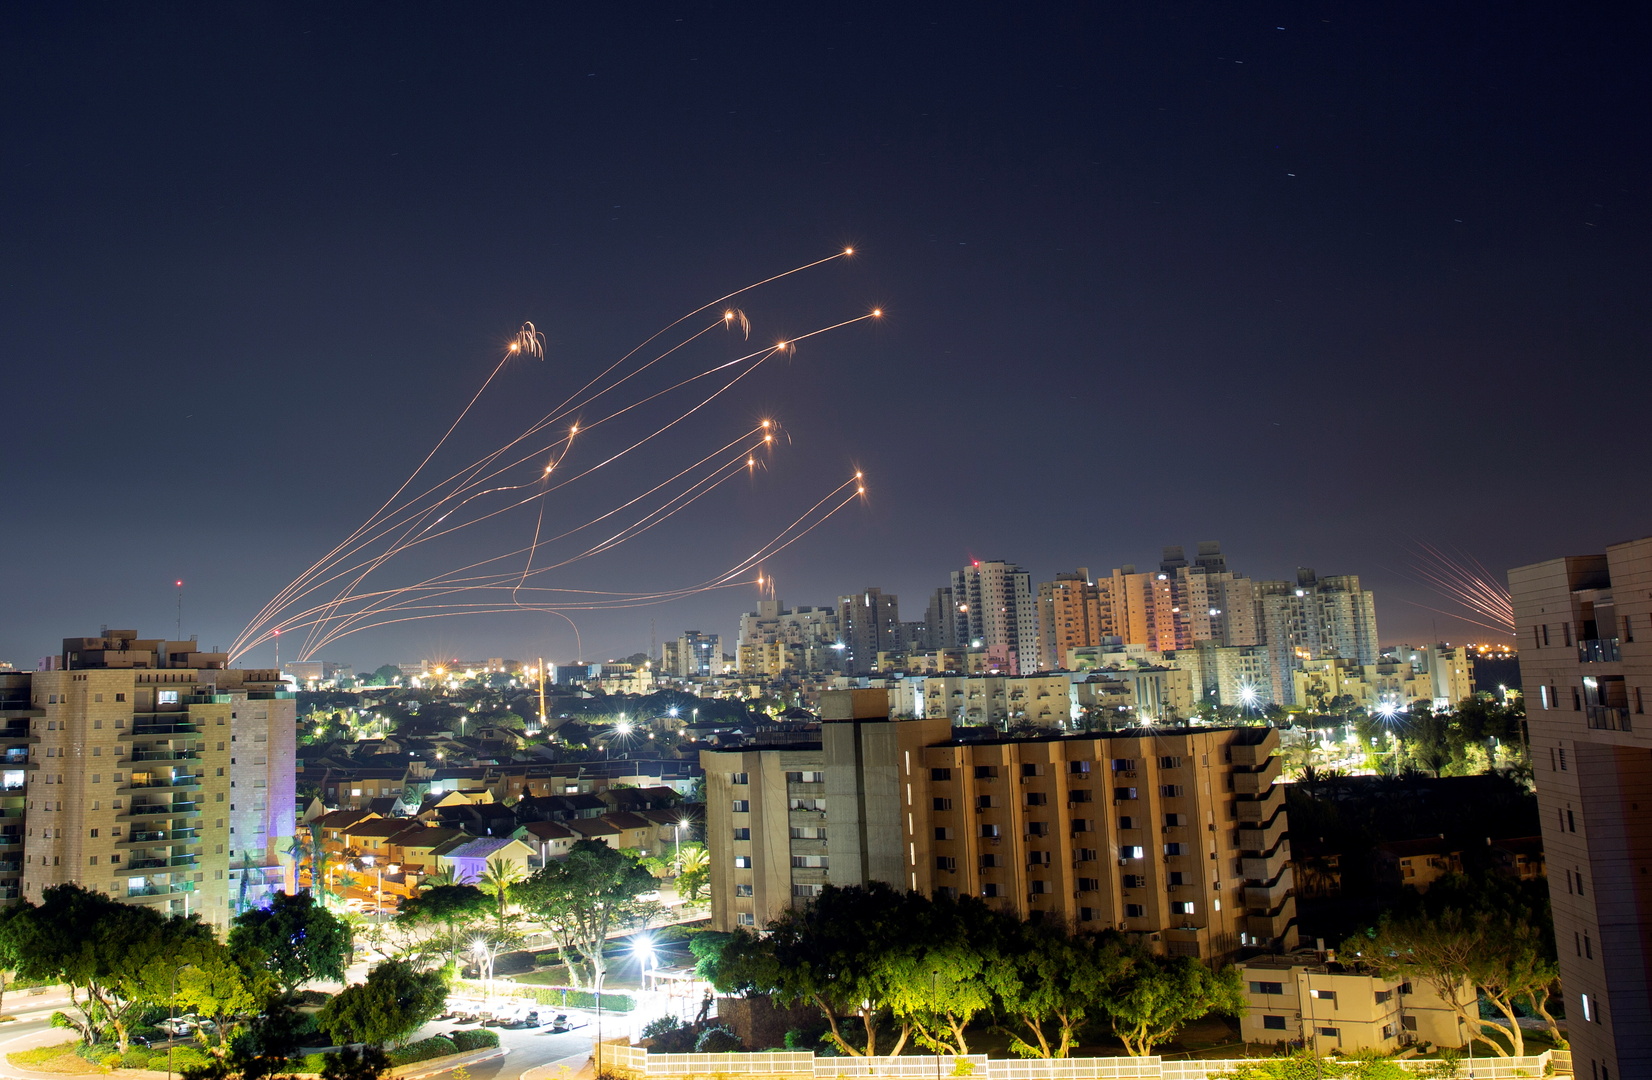 الجيش الإسرائيلي: 2300 صاروخ أطلقت من قطاع غزة نحو إسرائيل خلال 6 أيام